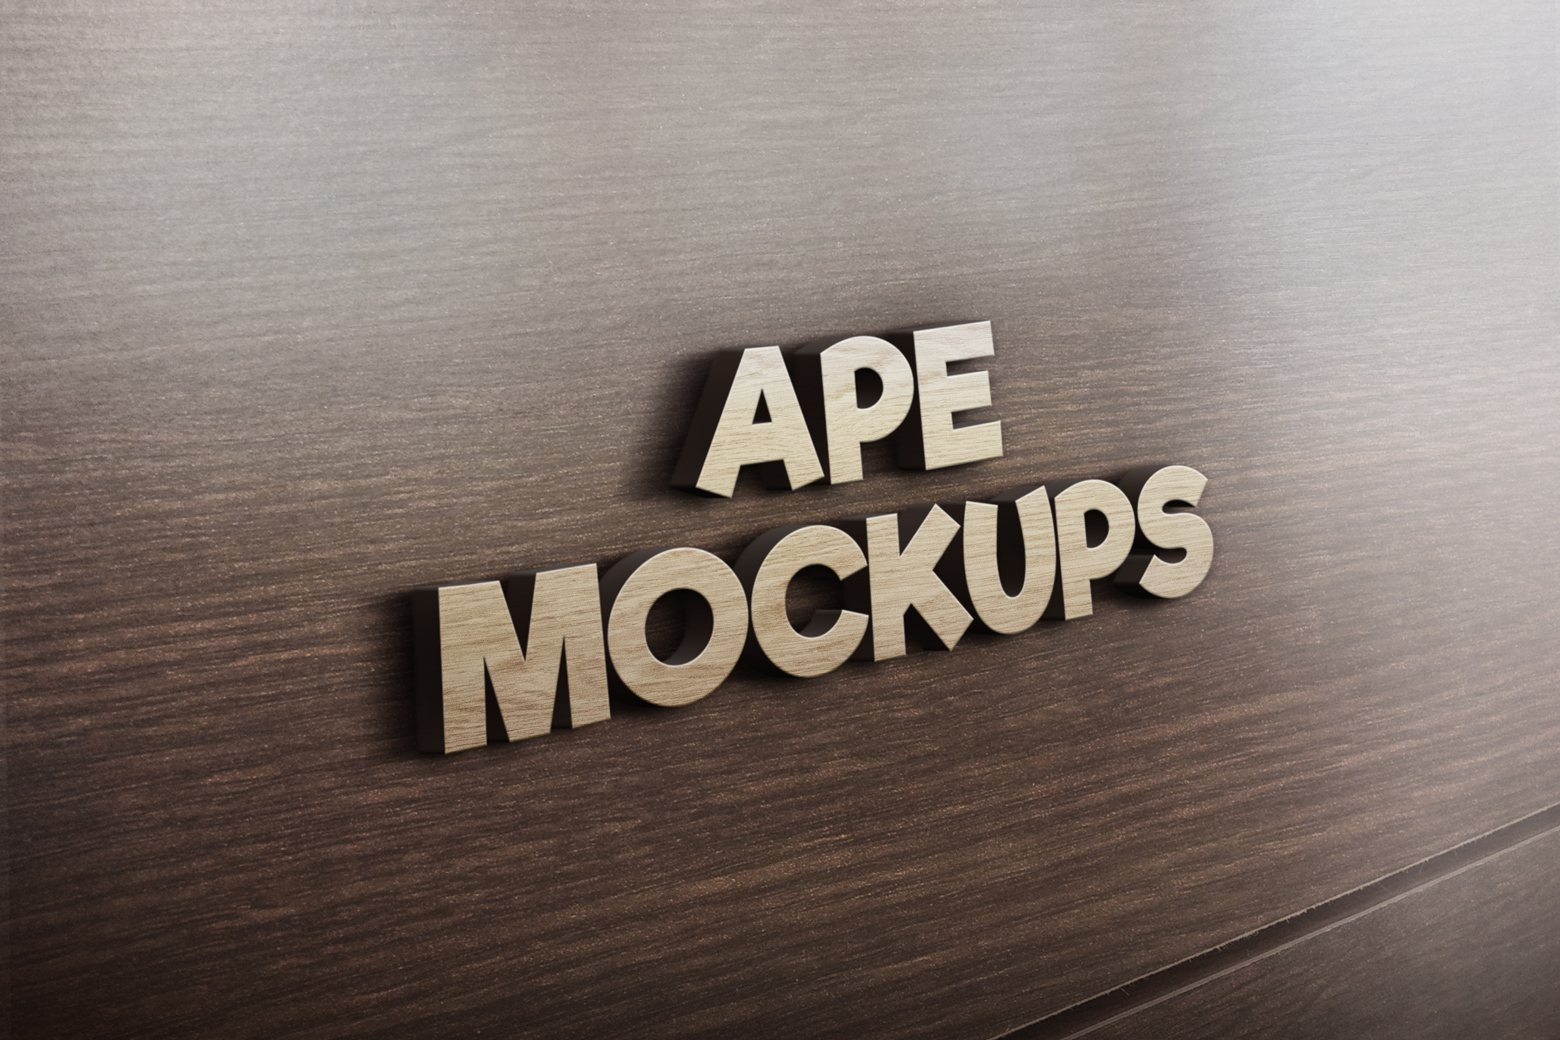 Download 3d Wooden Logo Mockup Psd Free Mockups Best Free Psd Mockups Apemockups